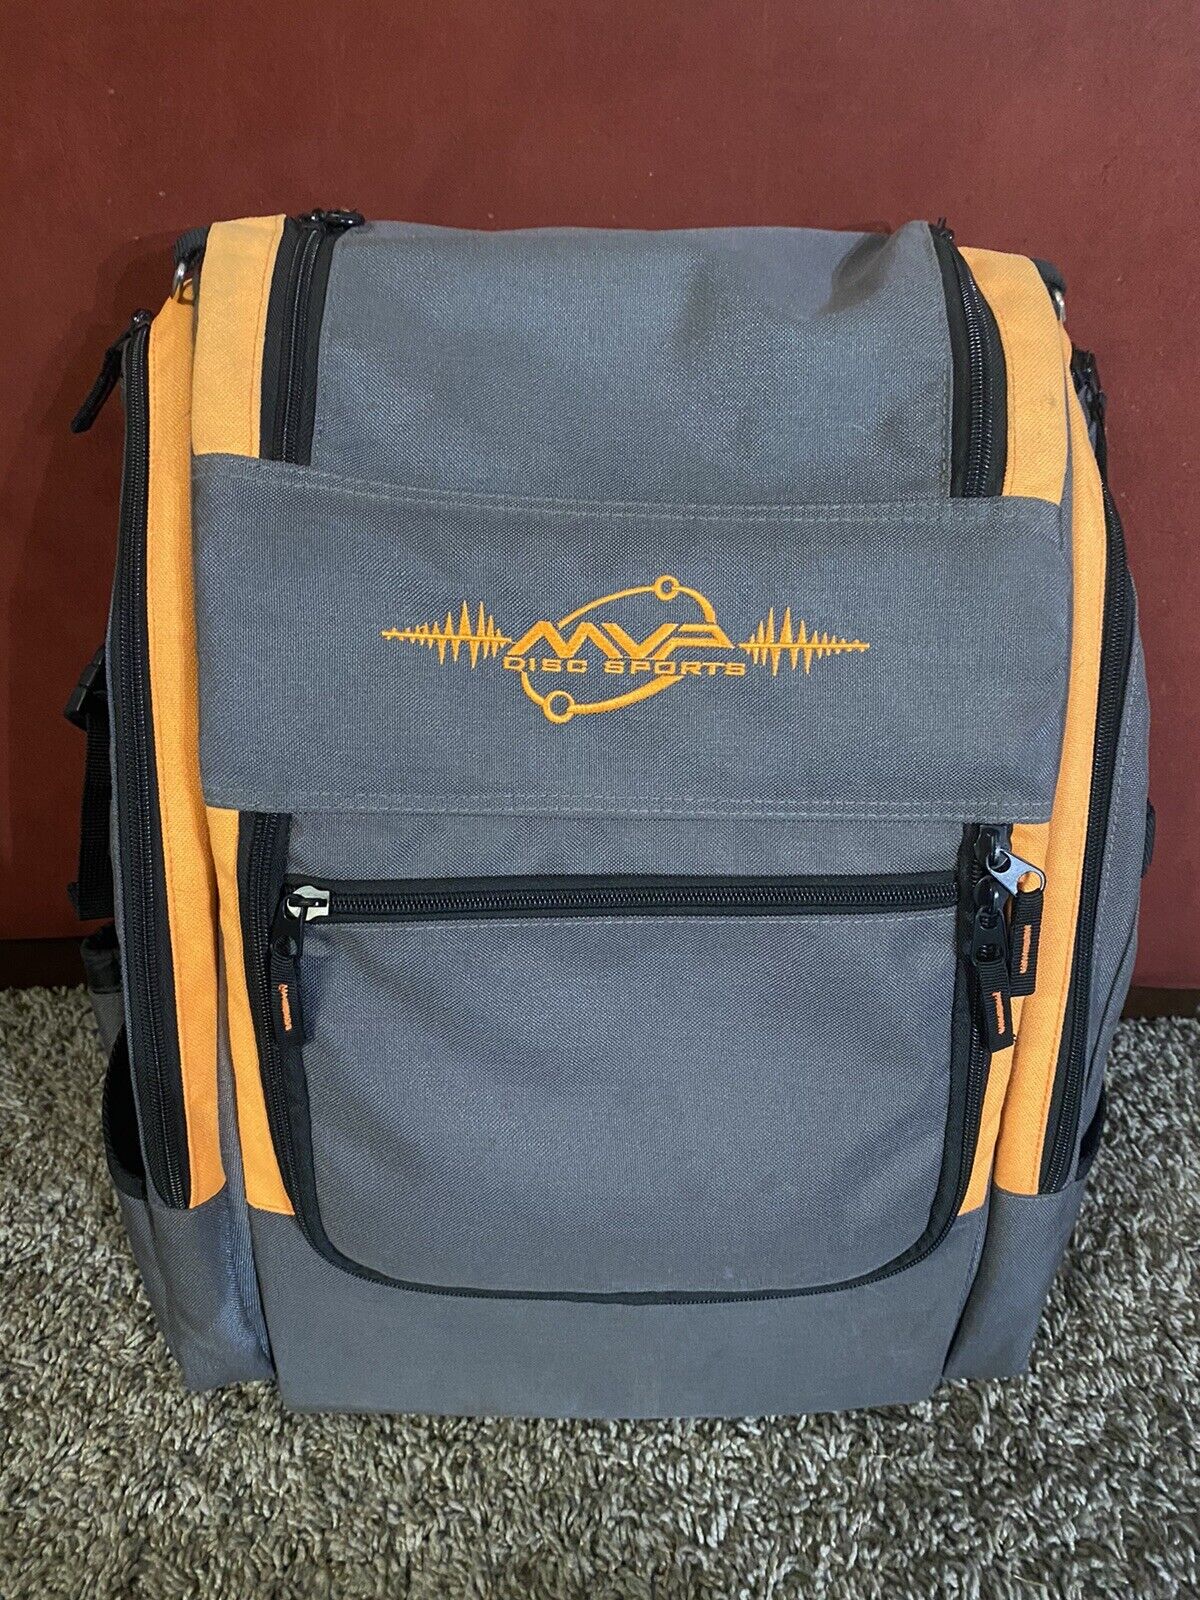 Mvp Discs Disc Golf Backpack Bag - Voyager - Holds 20+ Discs - Grey/orange